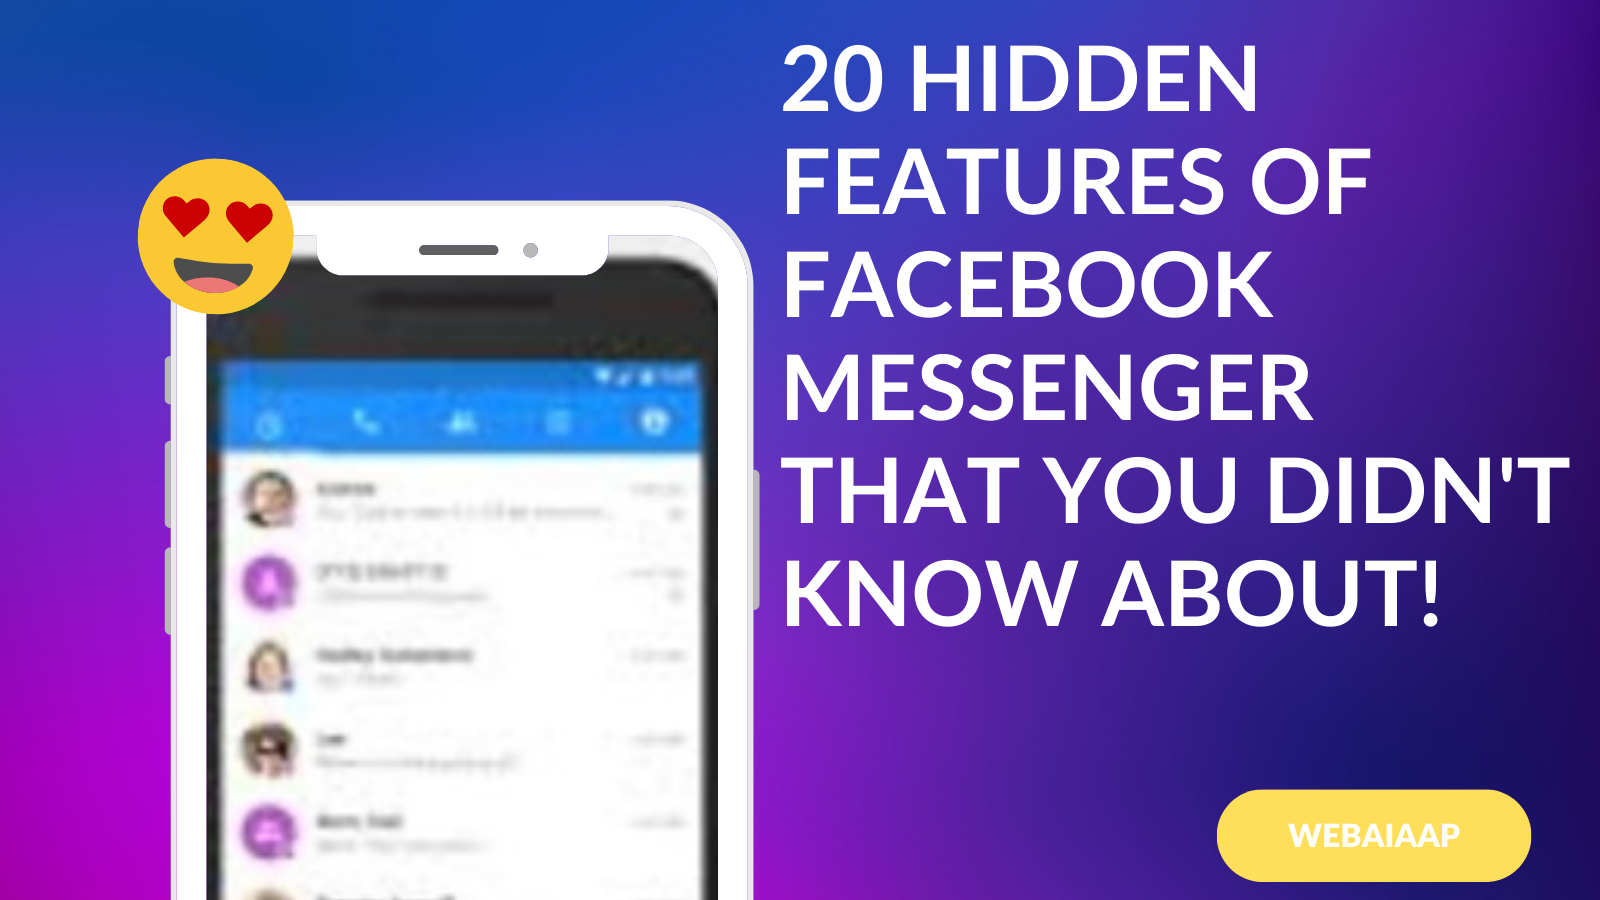 20 Hidden Features of Facebook Messenger